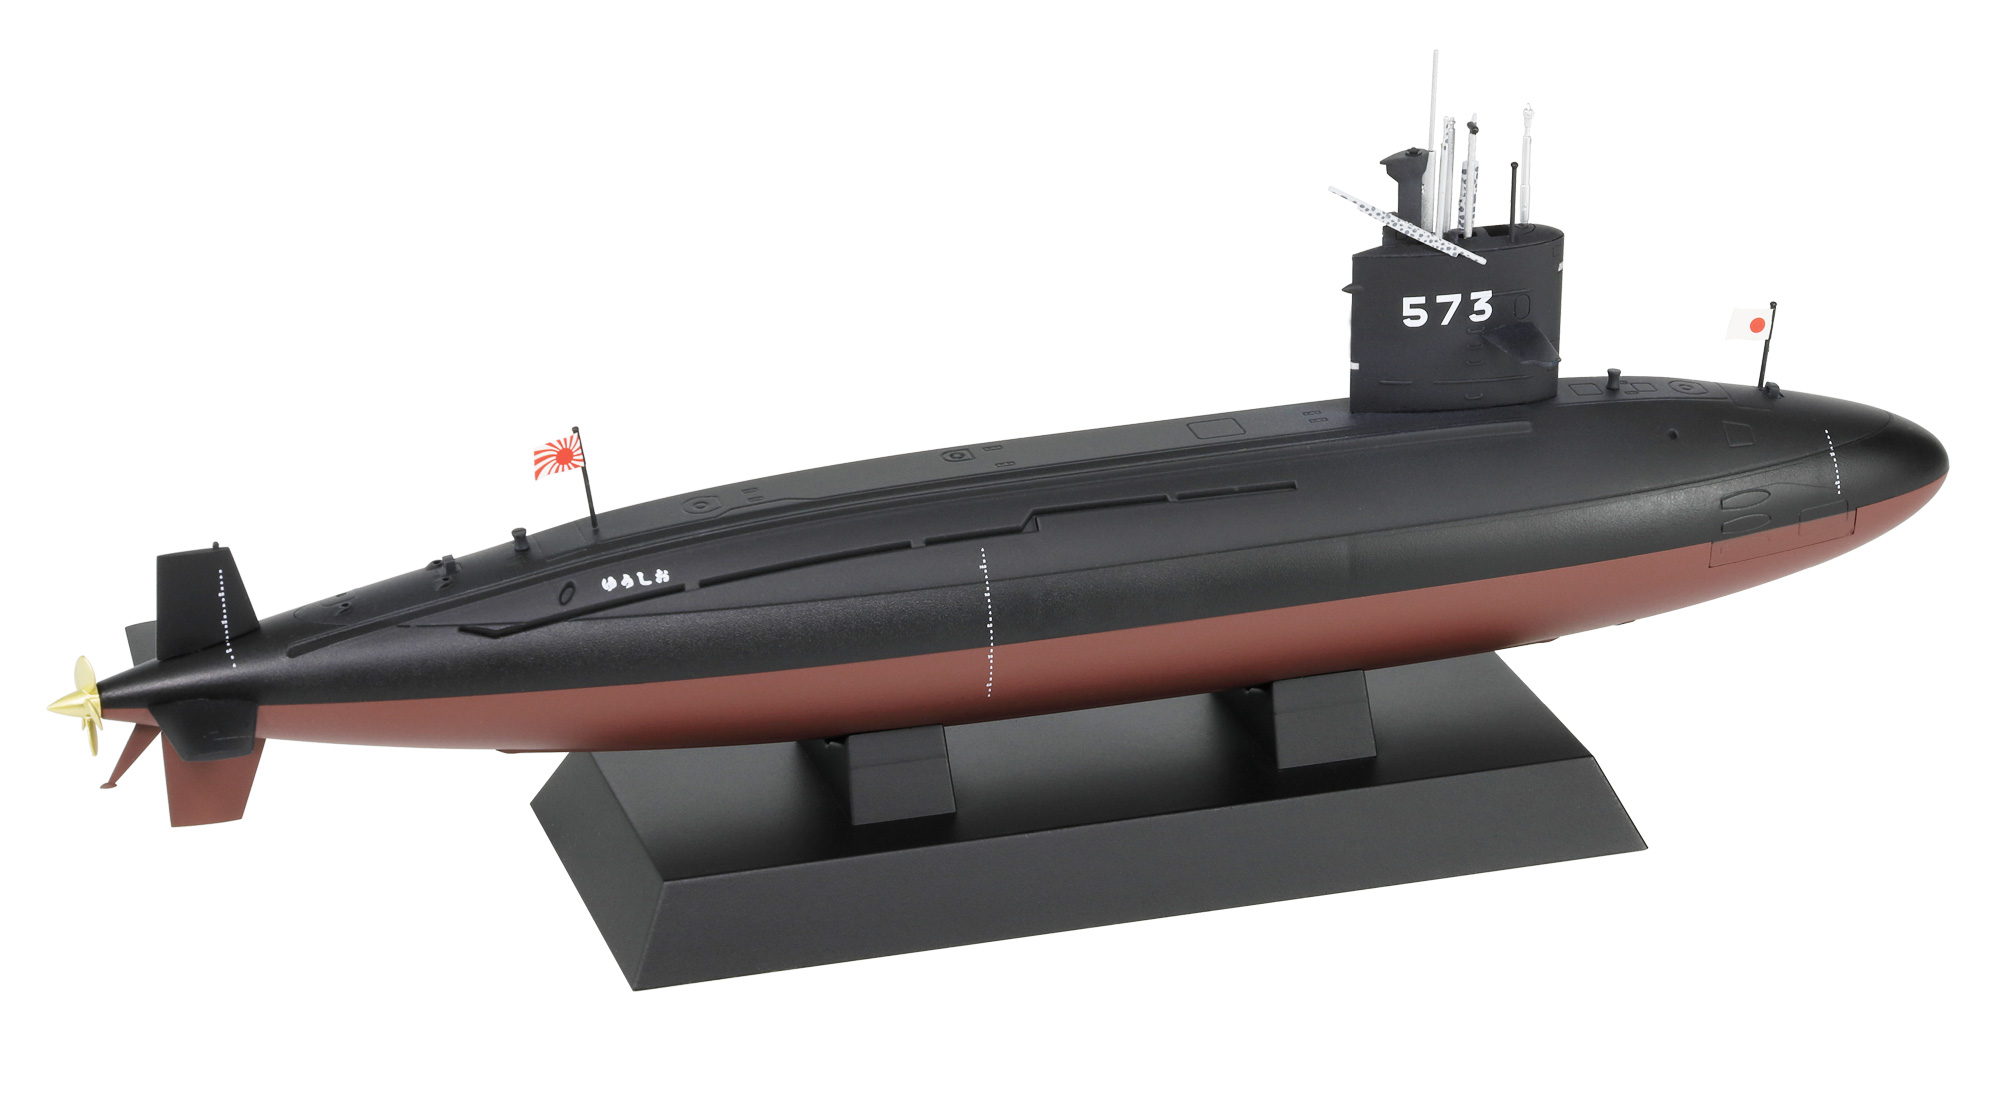 1/350　海上自衛隊 潜水艦 SS-573 ゆうしお